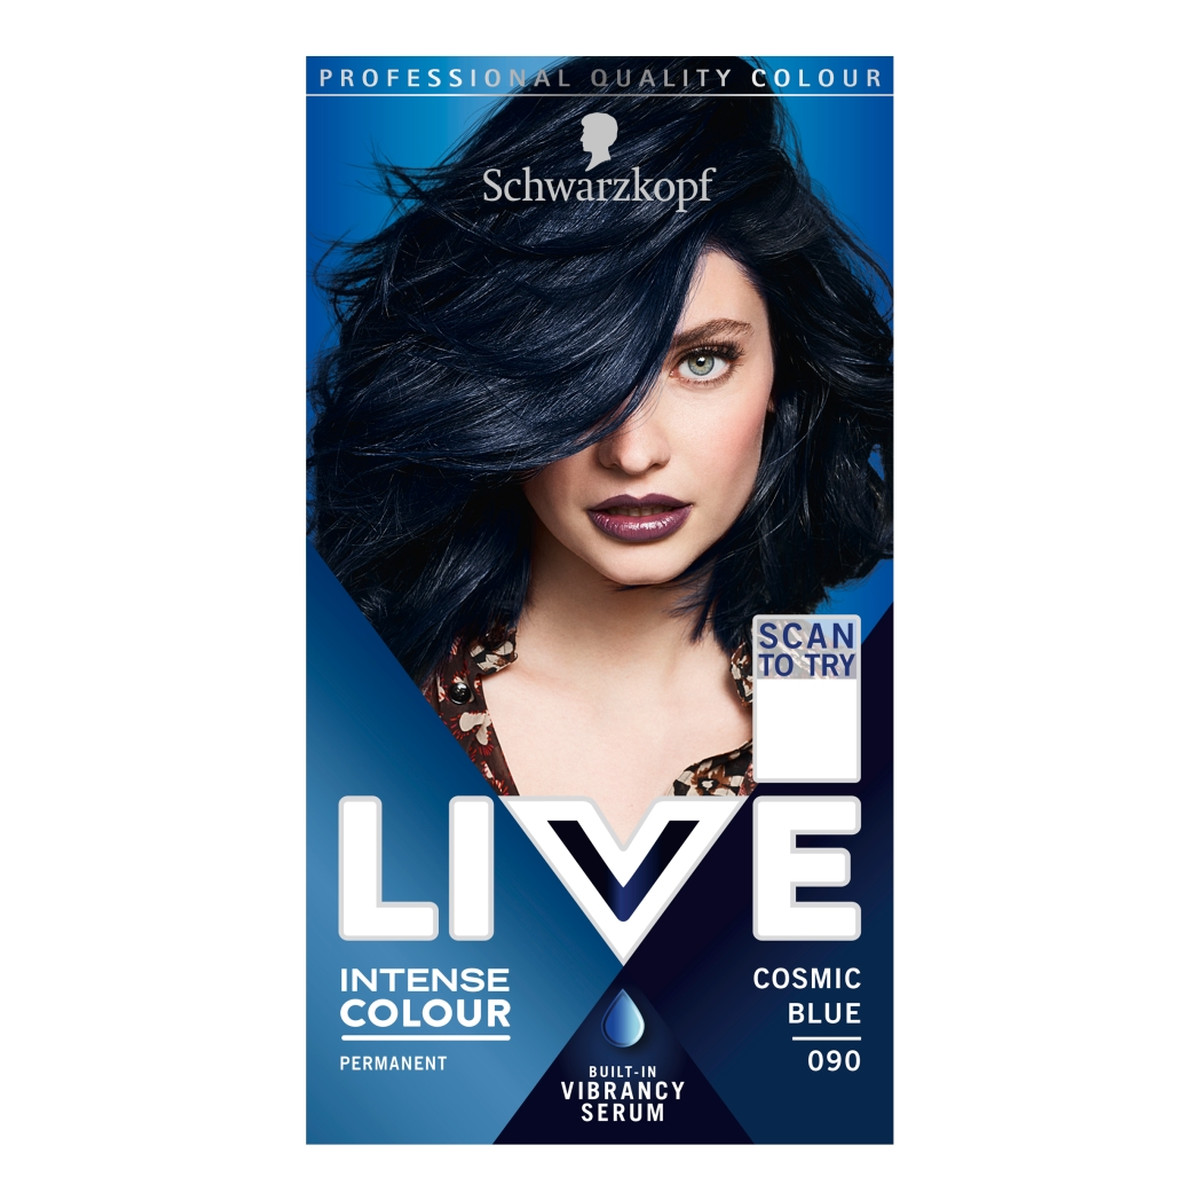 Schwarzkopf Live intense colour farba do włosów 090 cosmic blue